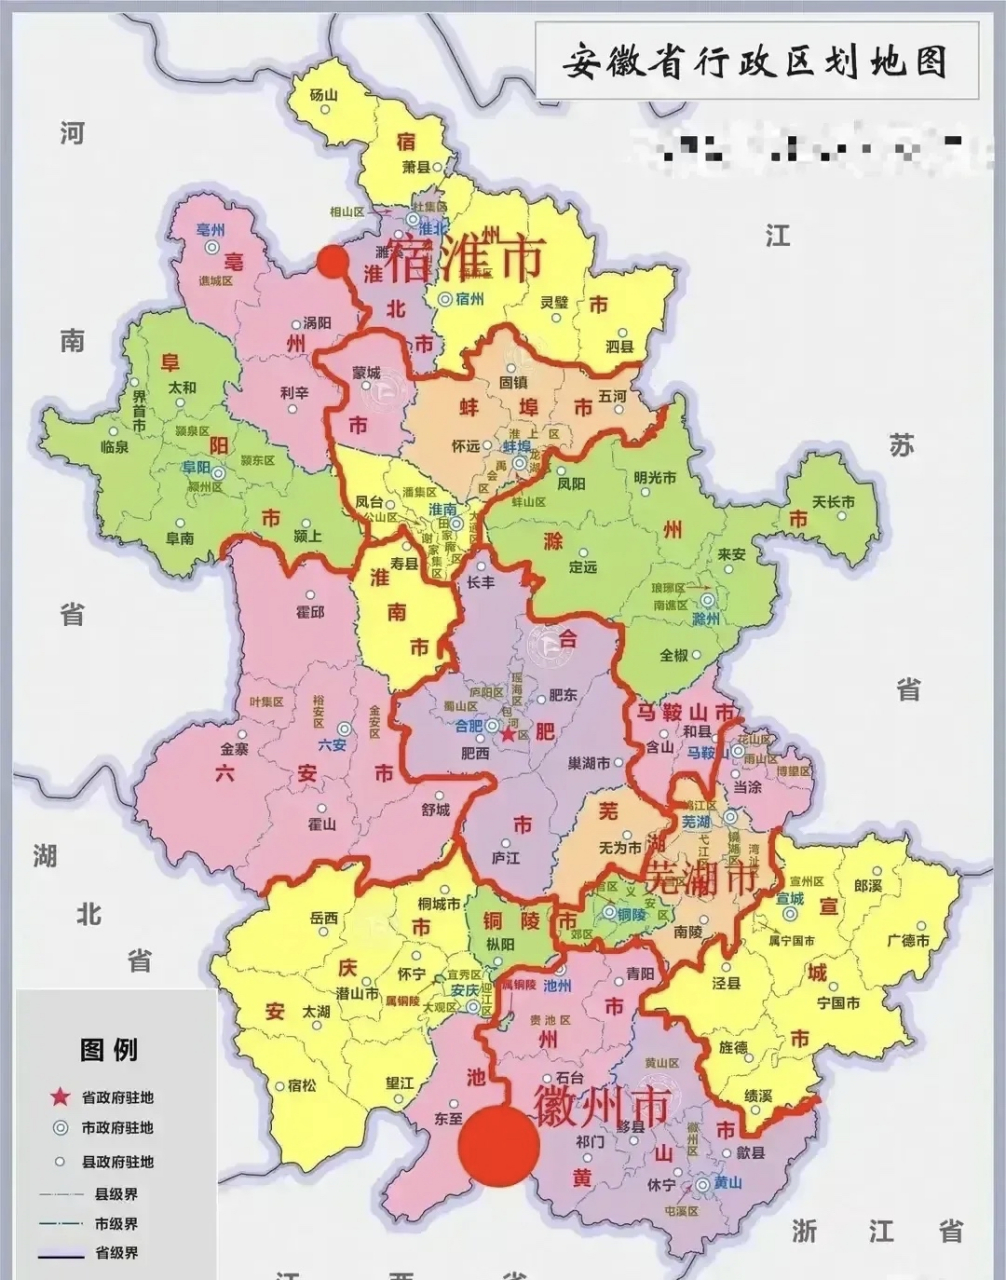 蒙城县市区地图图片